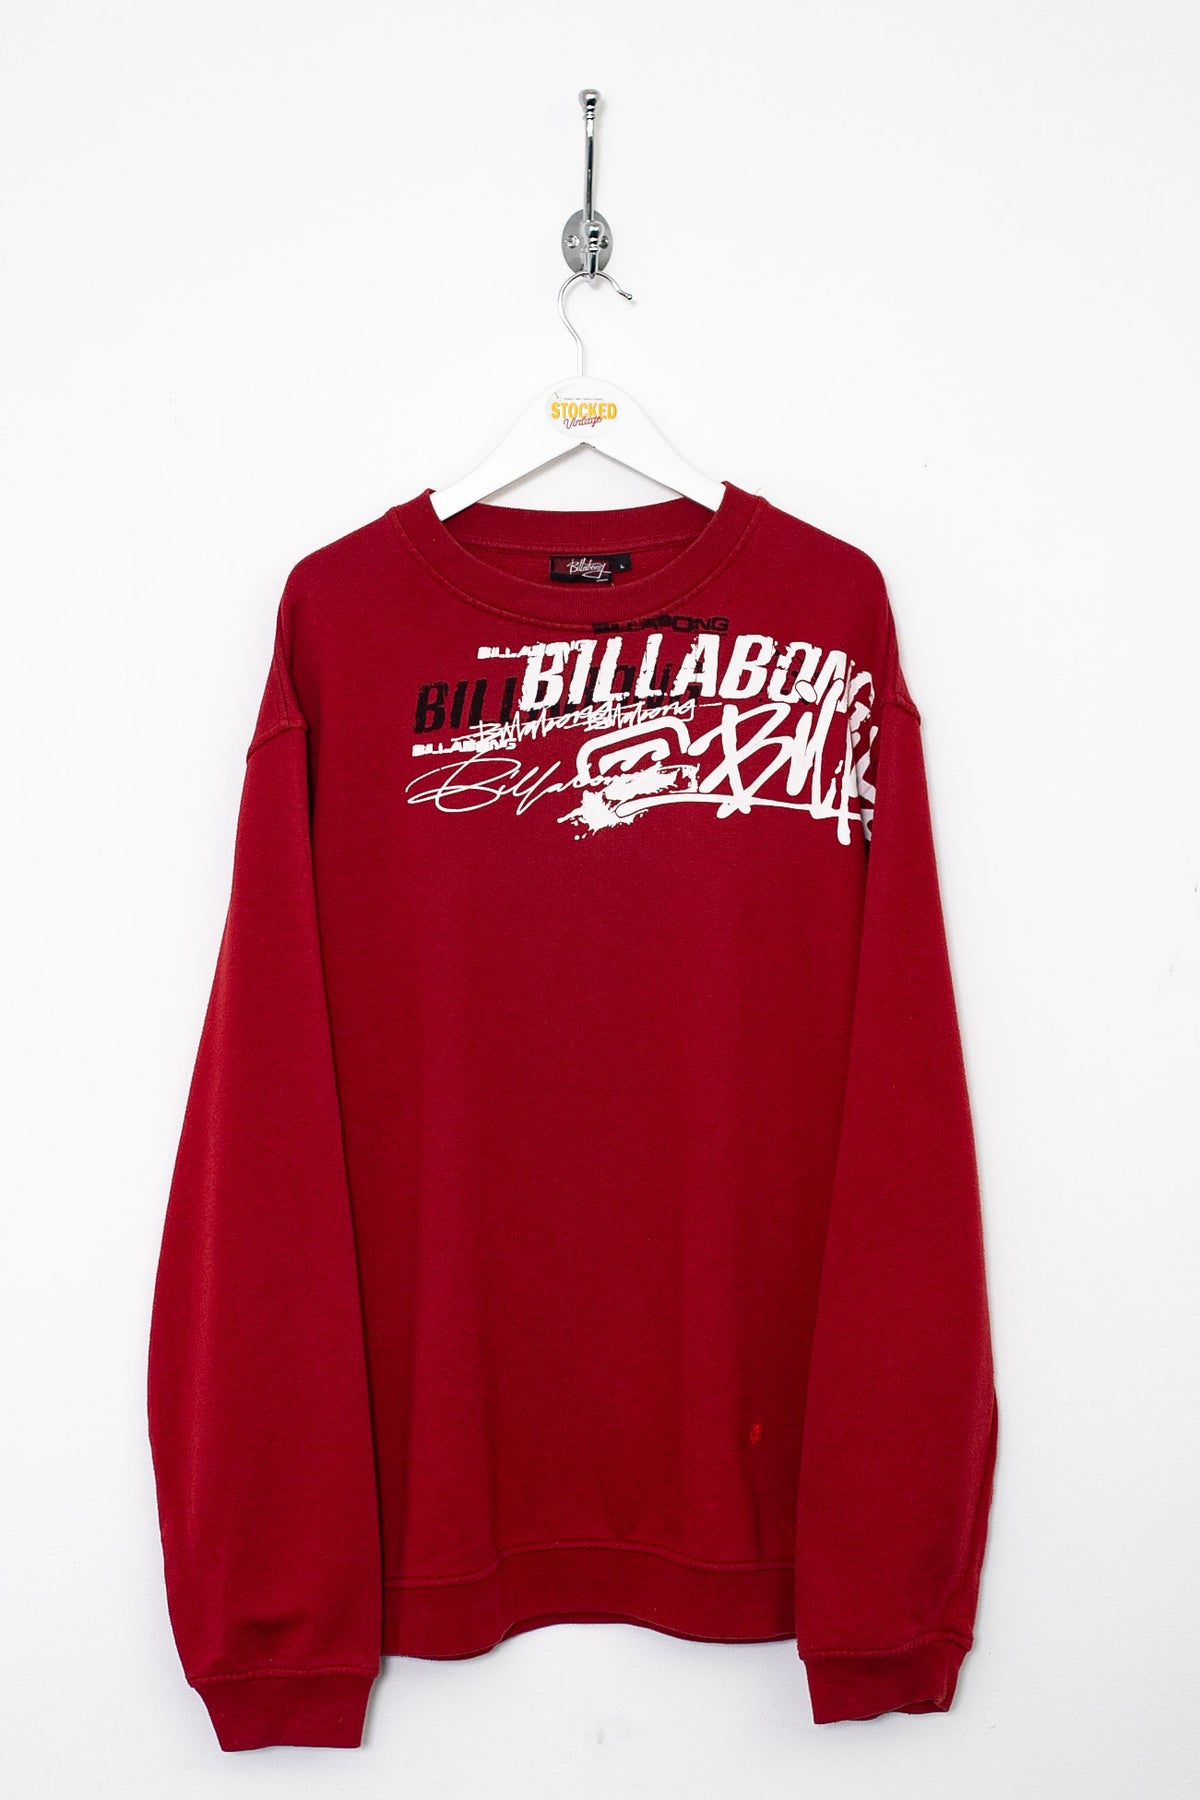 00s Billabong Sweatshirt (L)